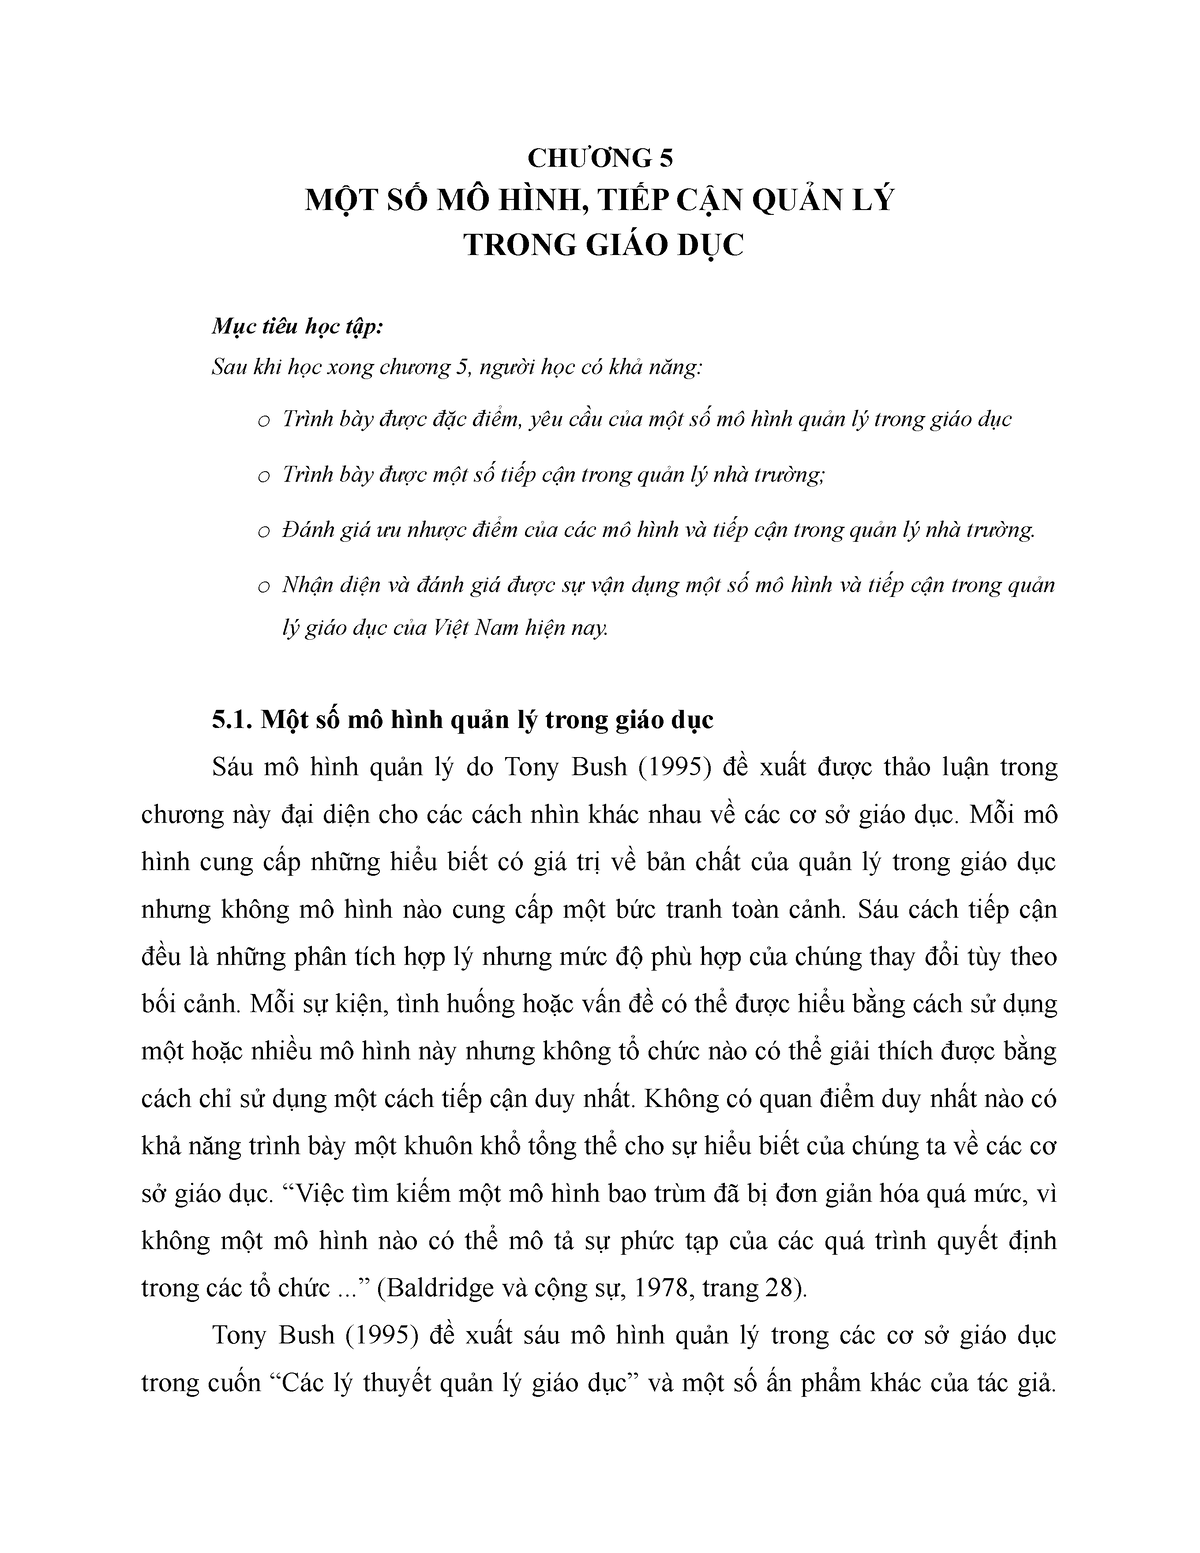 Quản Lý Nhà Nước Về Giáo Dục Và Đào Tạo  Nguyễn Văn Hộ  PDF